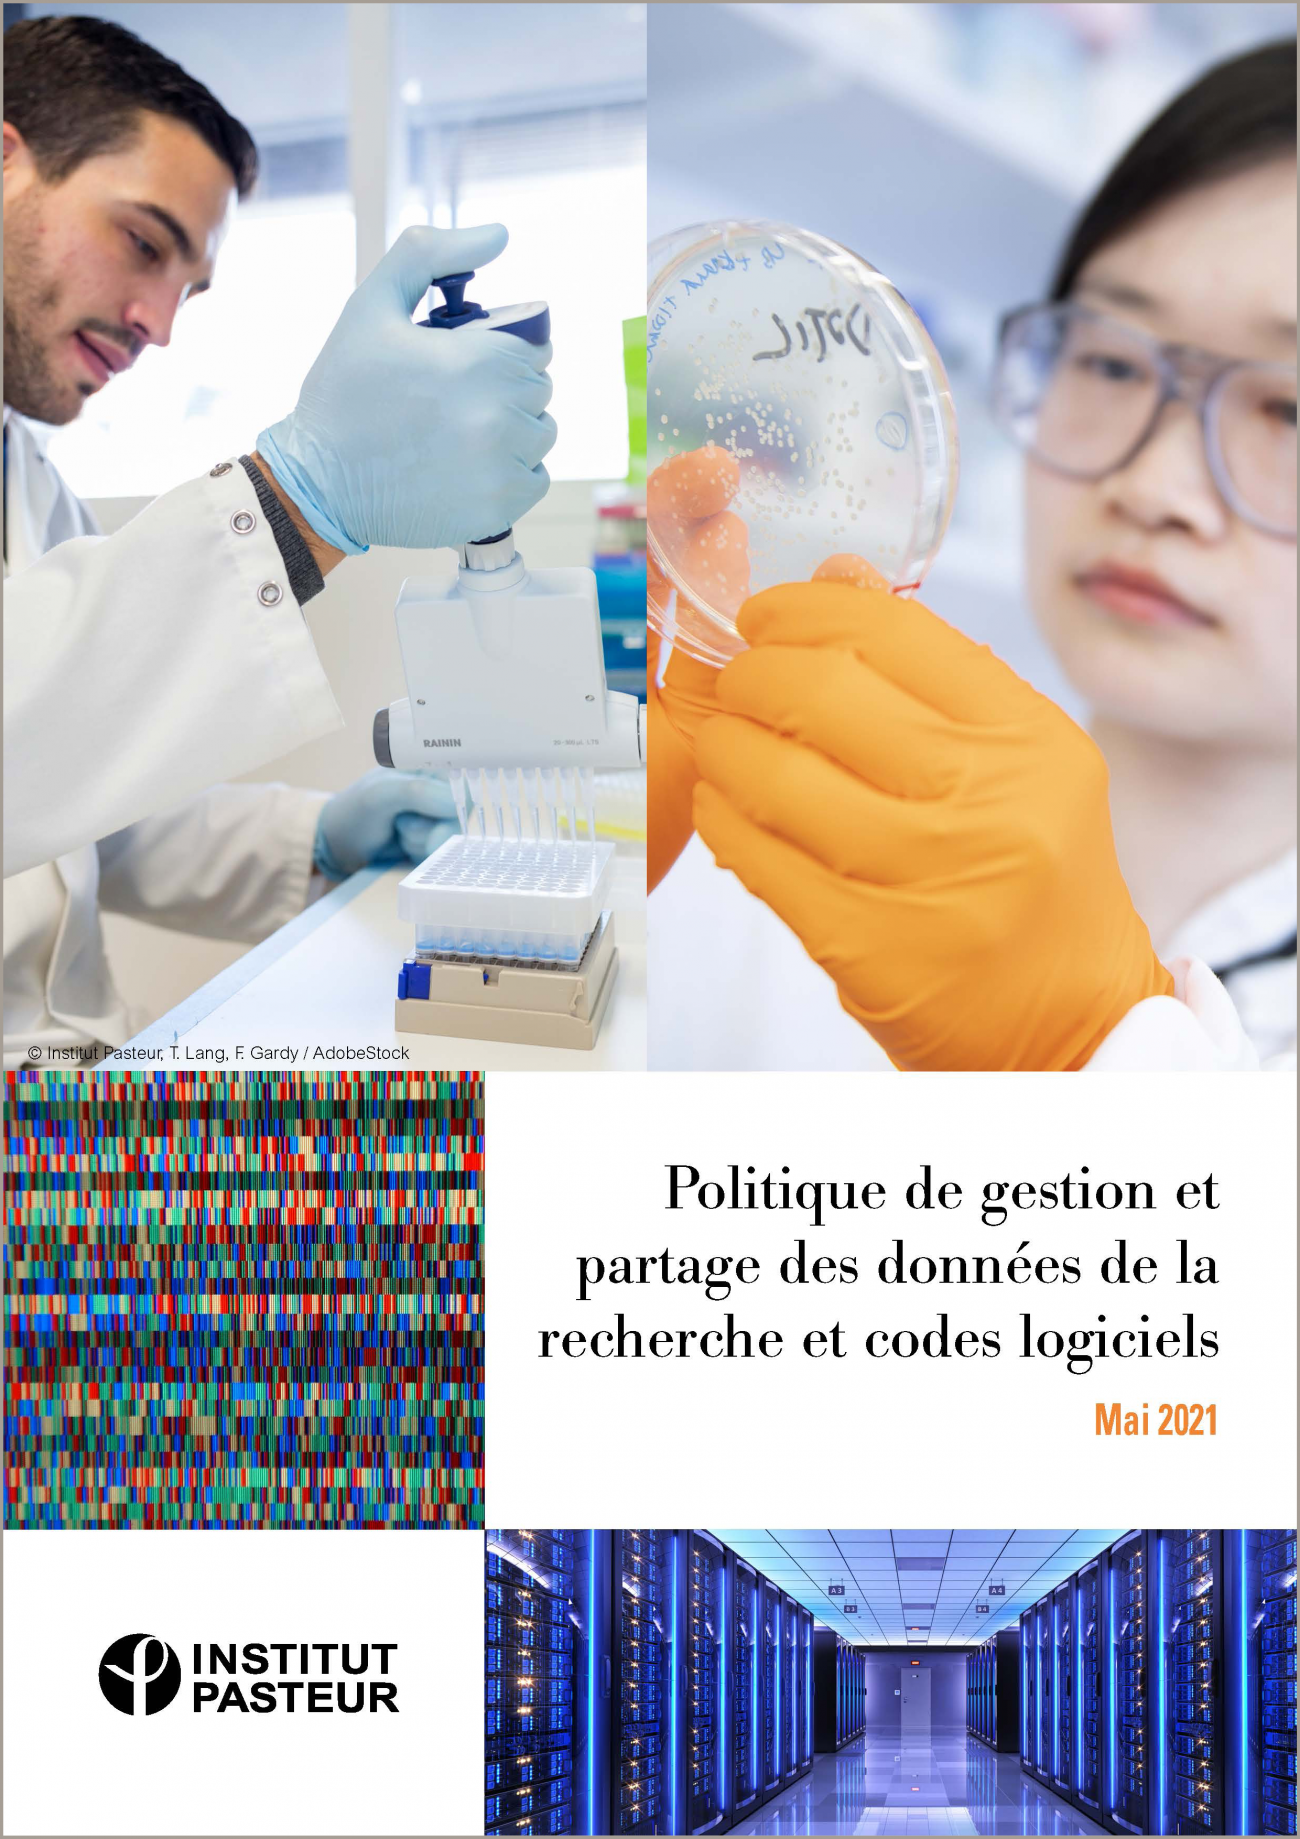 Institut Pasteur - Politique de gestion et partage des données de la recherche et codes logiciels